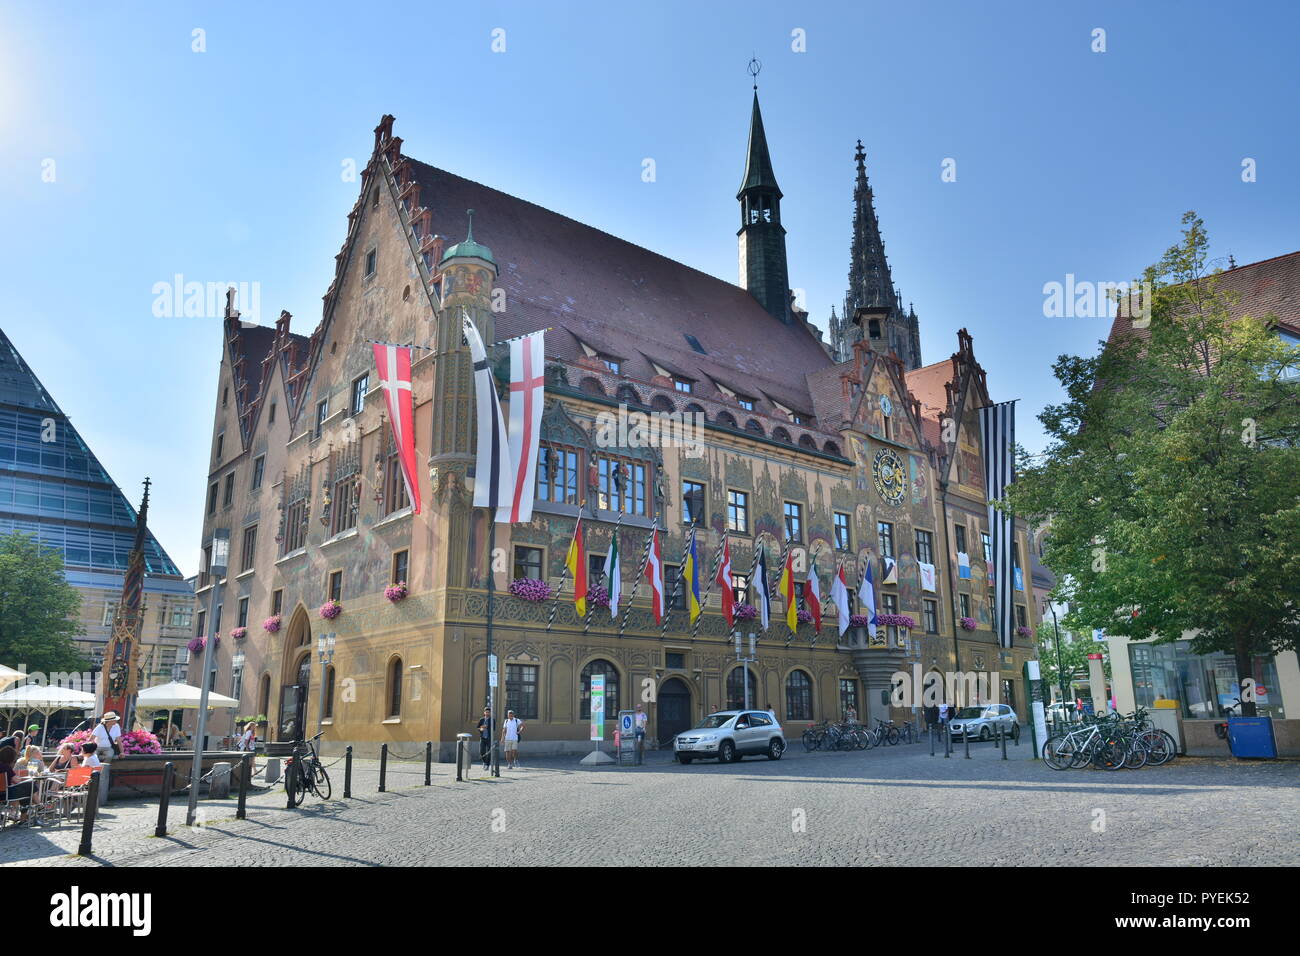 Ulm, Germania - Visualizzare nella storica città di Ulm, Germania meridionale Foto Stock